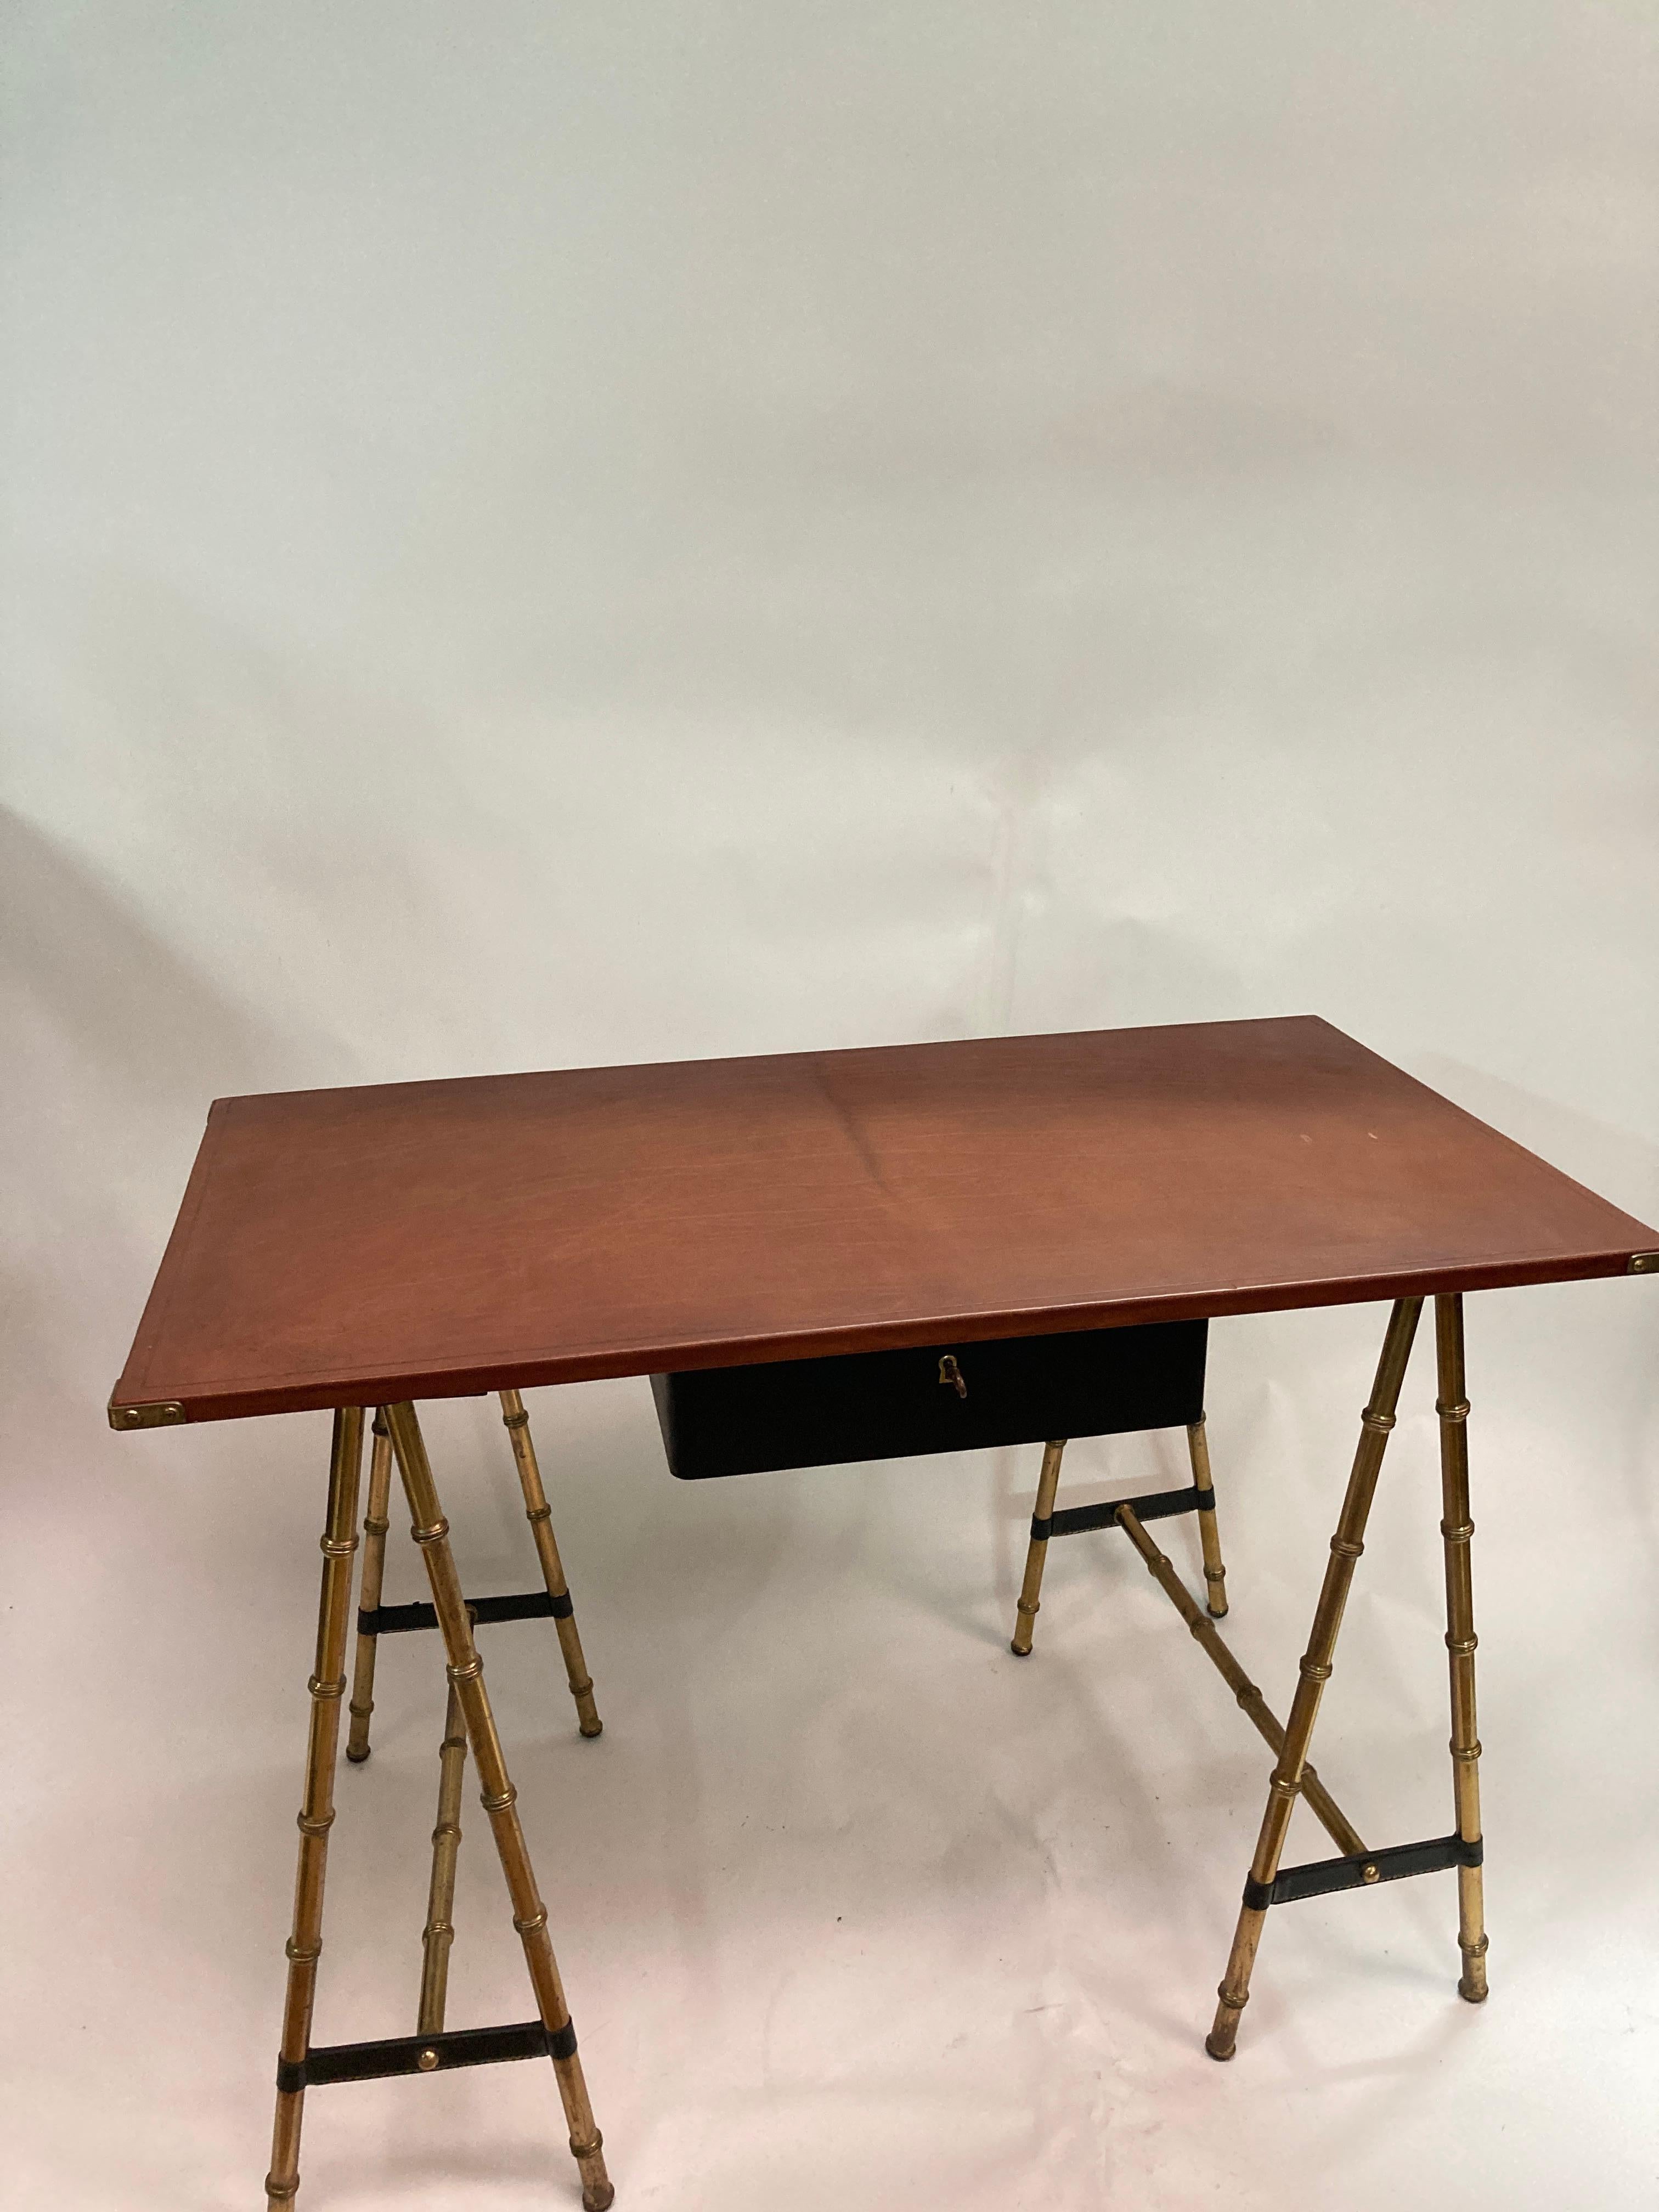 Très beau bureau en cuir surpiqué bicolore marron et noir 
pieds en laiton à la manière des bambous 
Possibilité d'ajouter un fauteuil qui n'est pas inclus